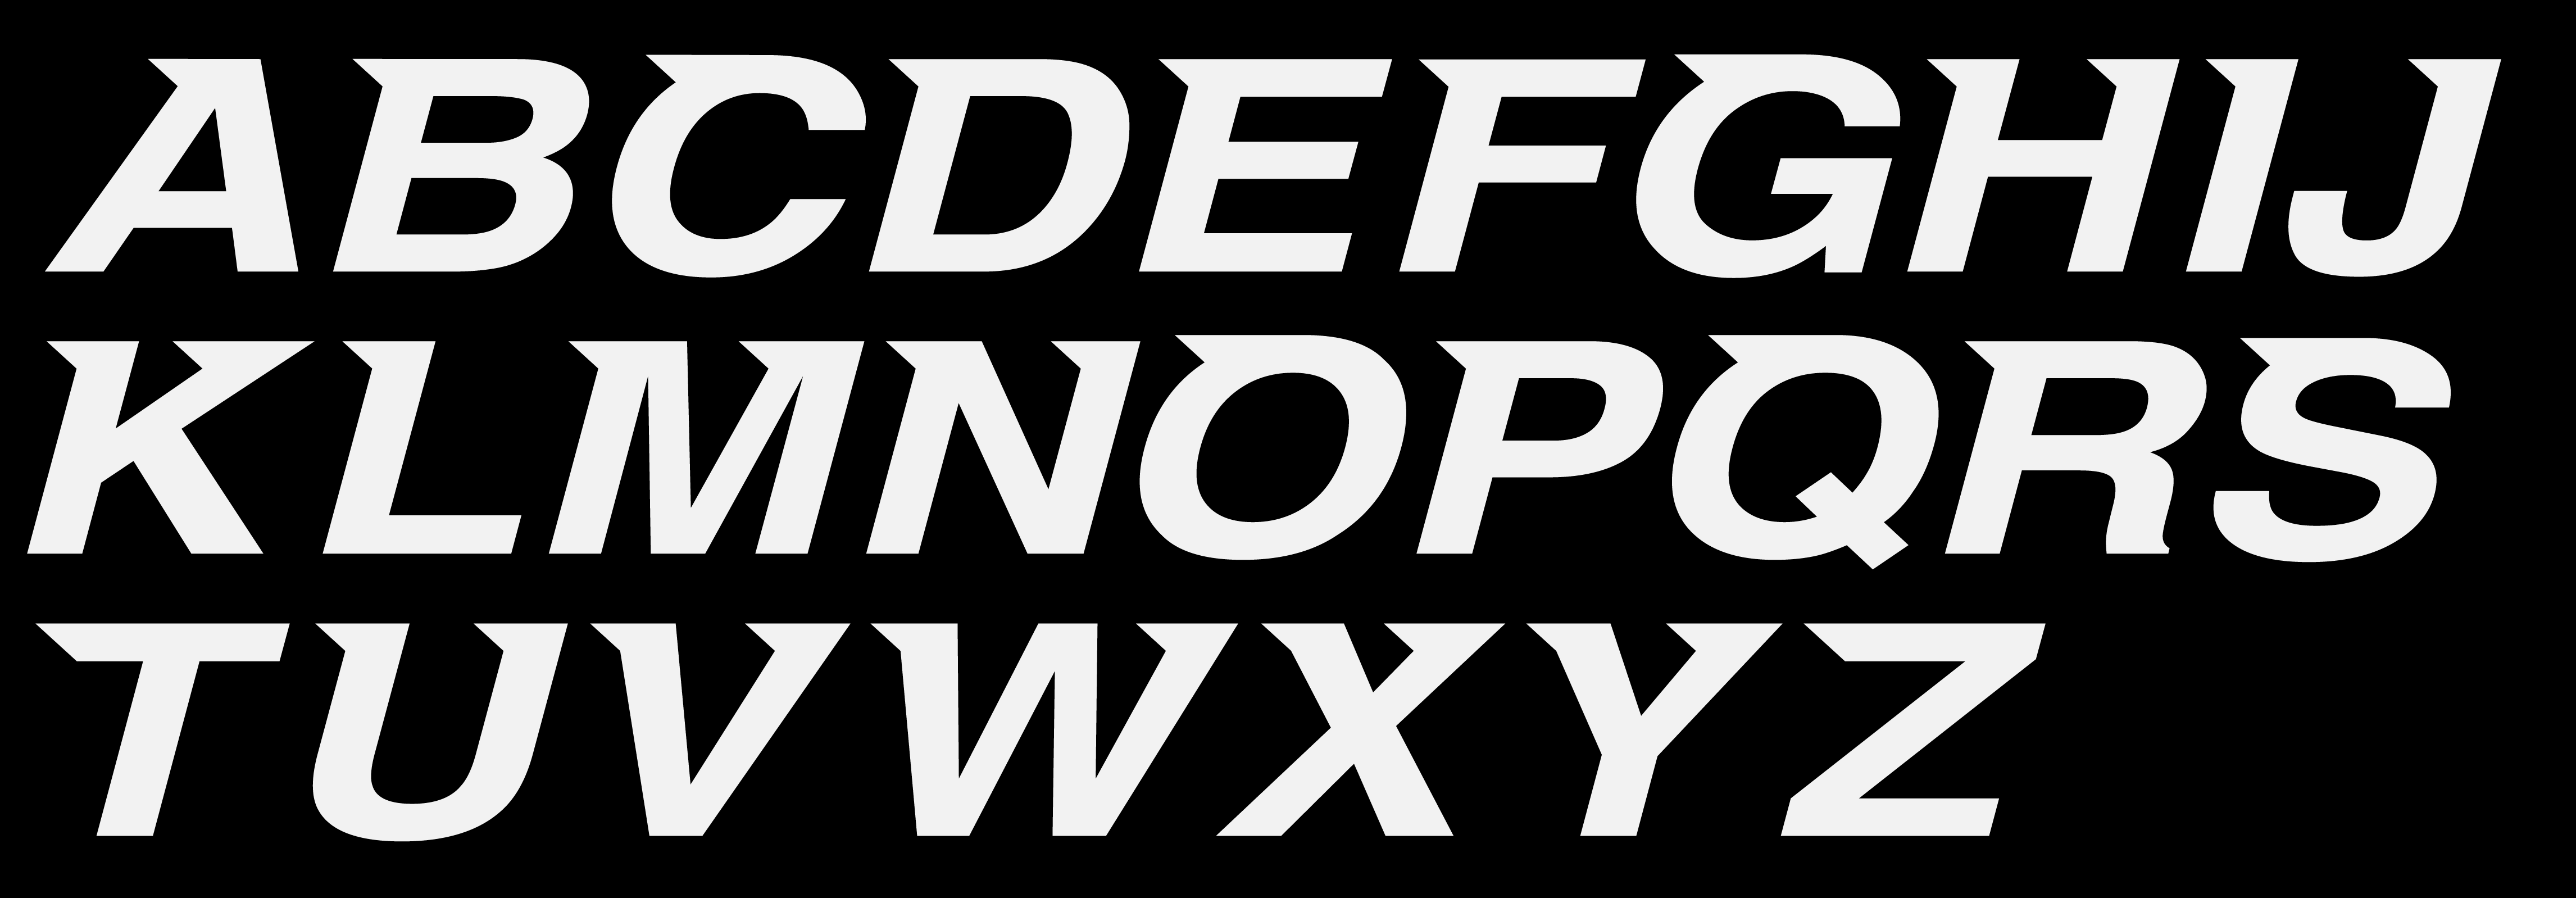 Iron-Lady-Typography_Type-4